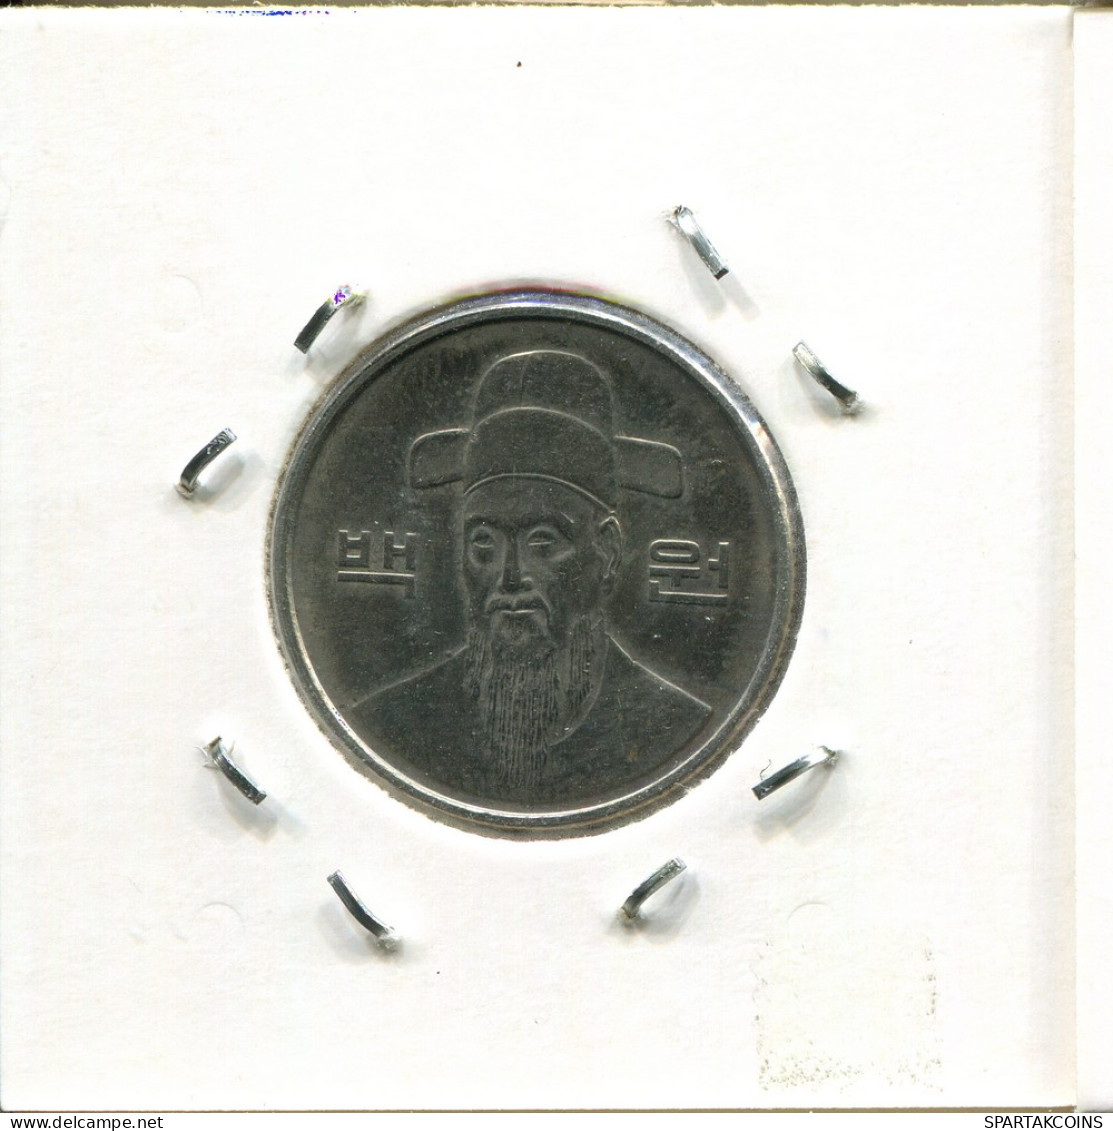 100 WON 1986 COREA DEL SUR SOUTH KOREA Moneda #AS056.E - Korea, South